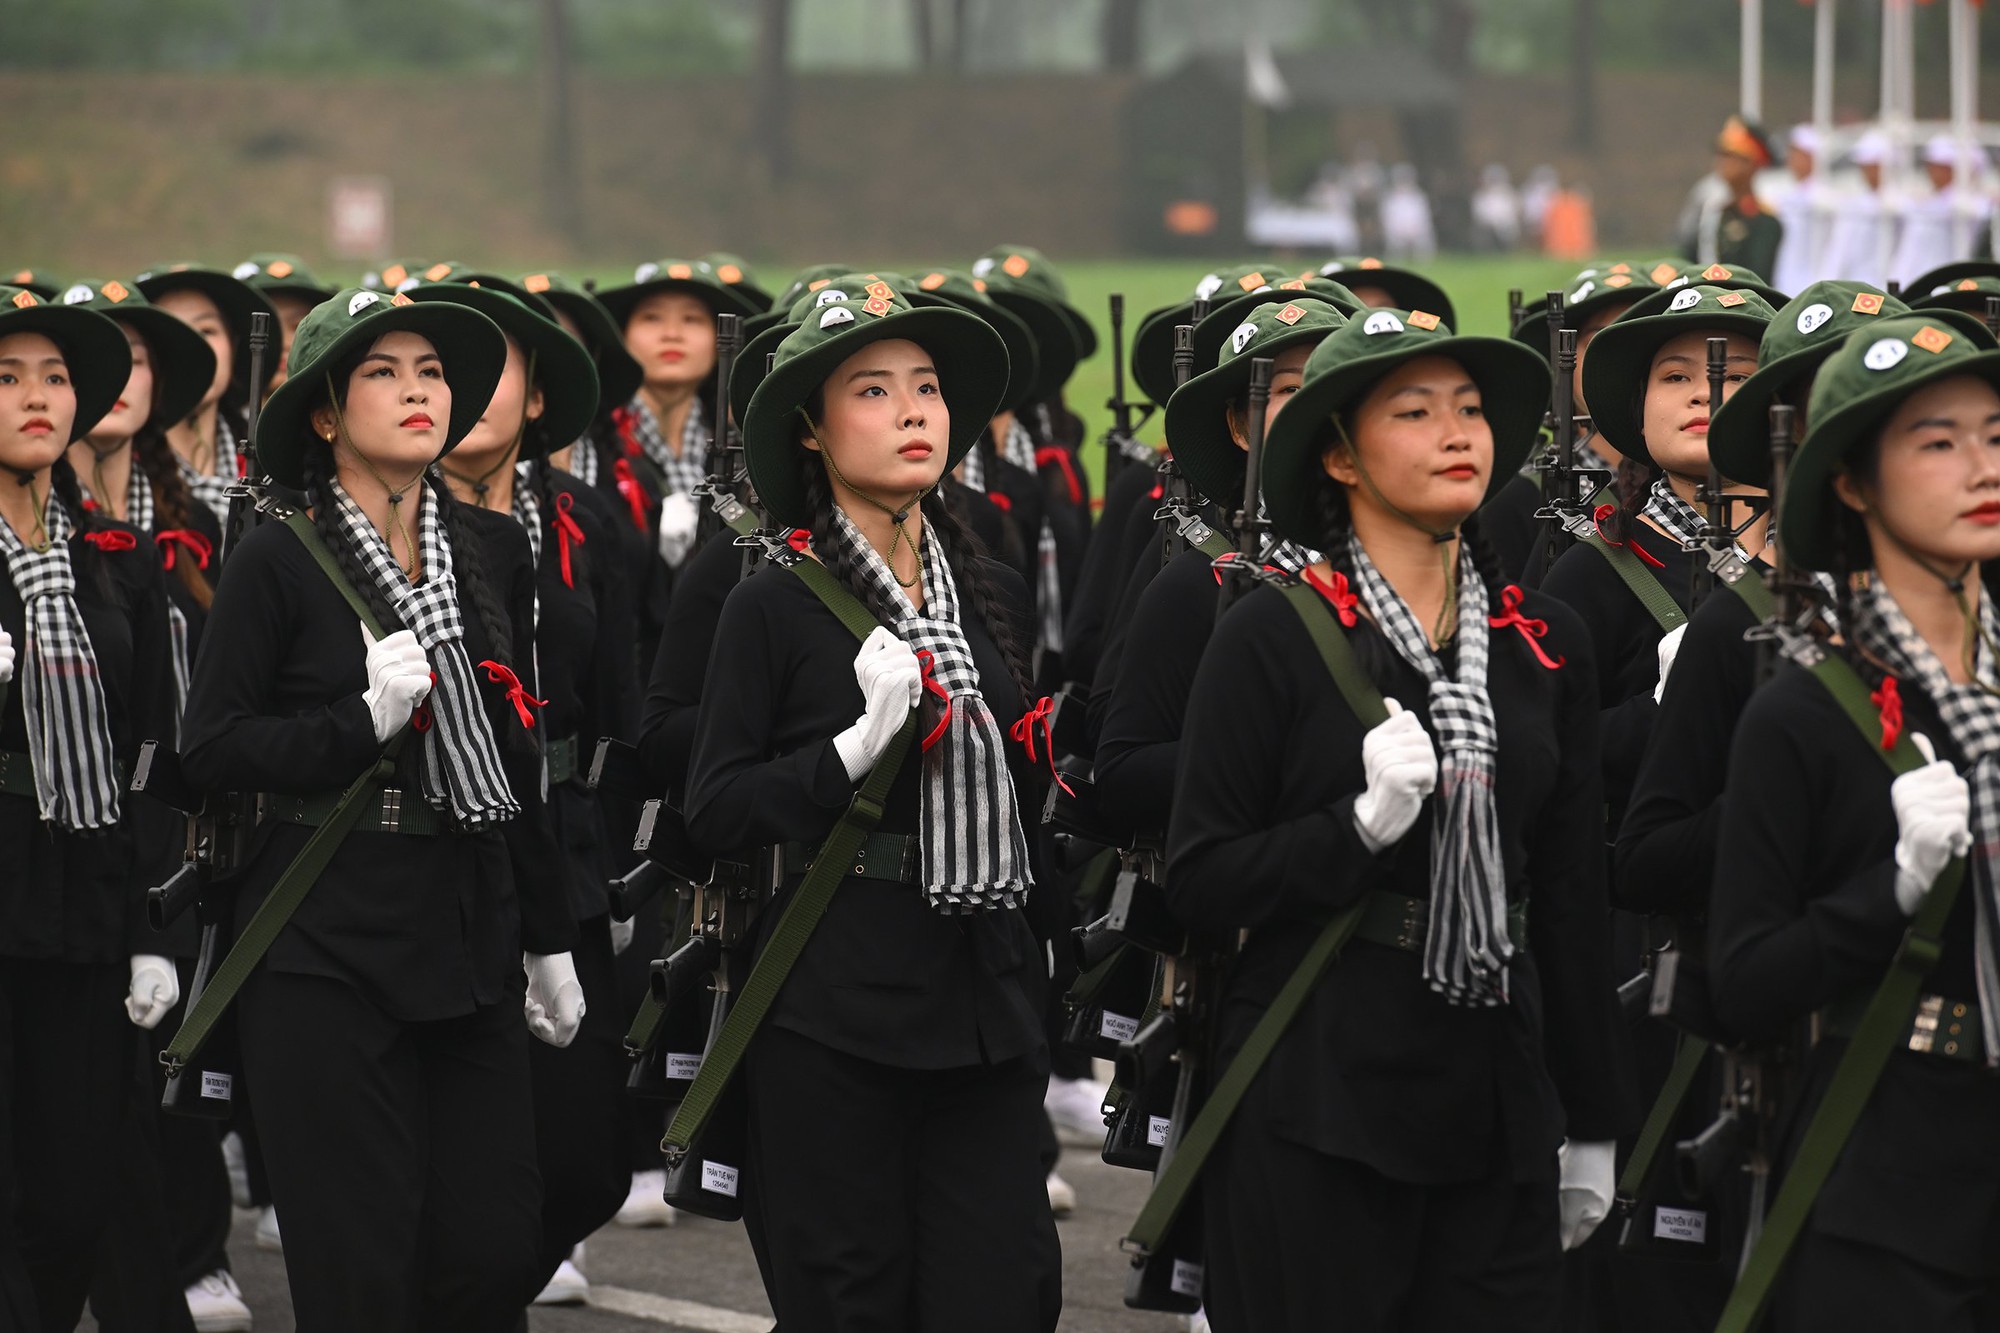 Cập nhật: Lễ diễu binh hào hùng chưa từng có trong lịch sử với 12.000 người, 12 máy bay ở Điện Biên Phủ - Ảnh 19.